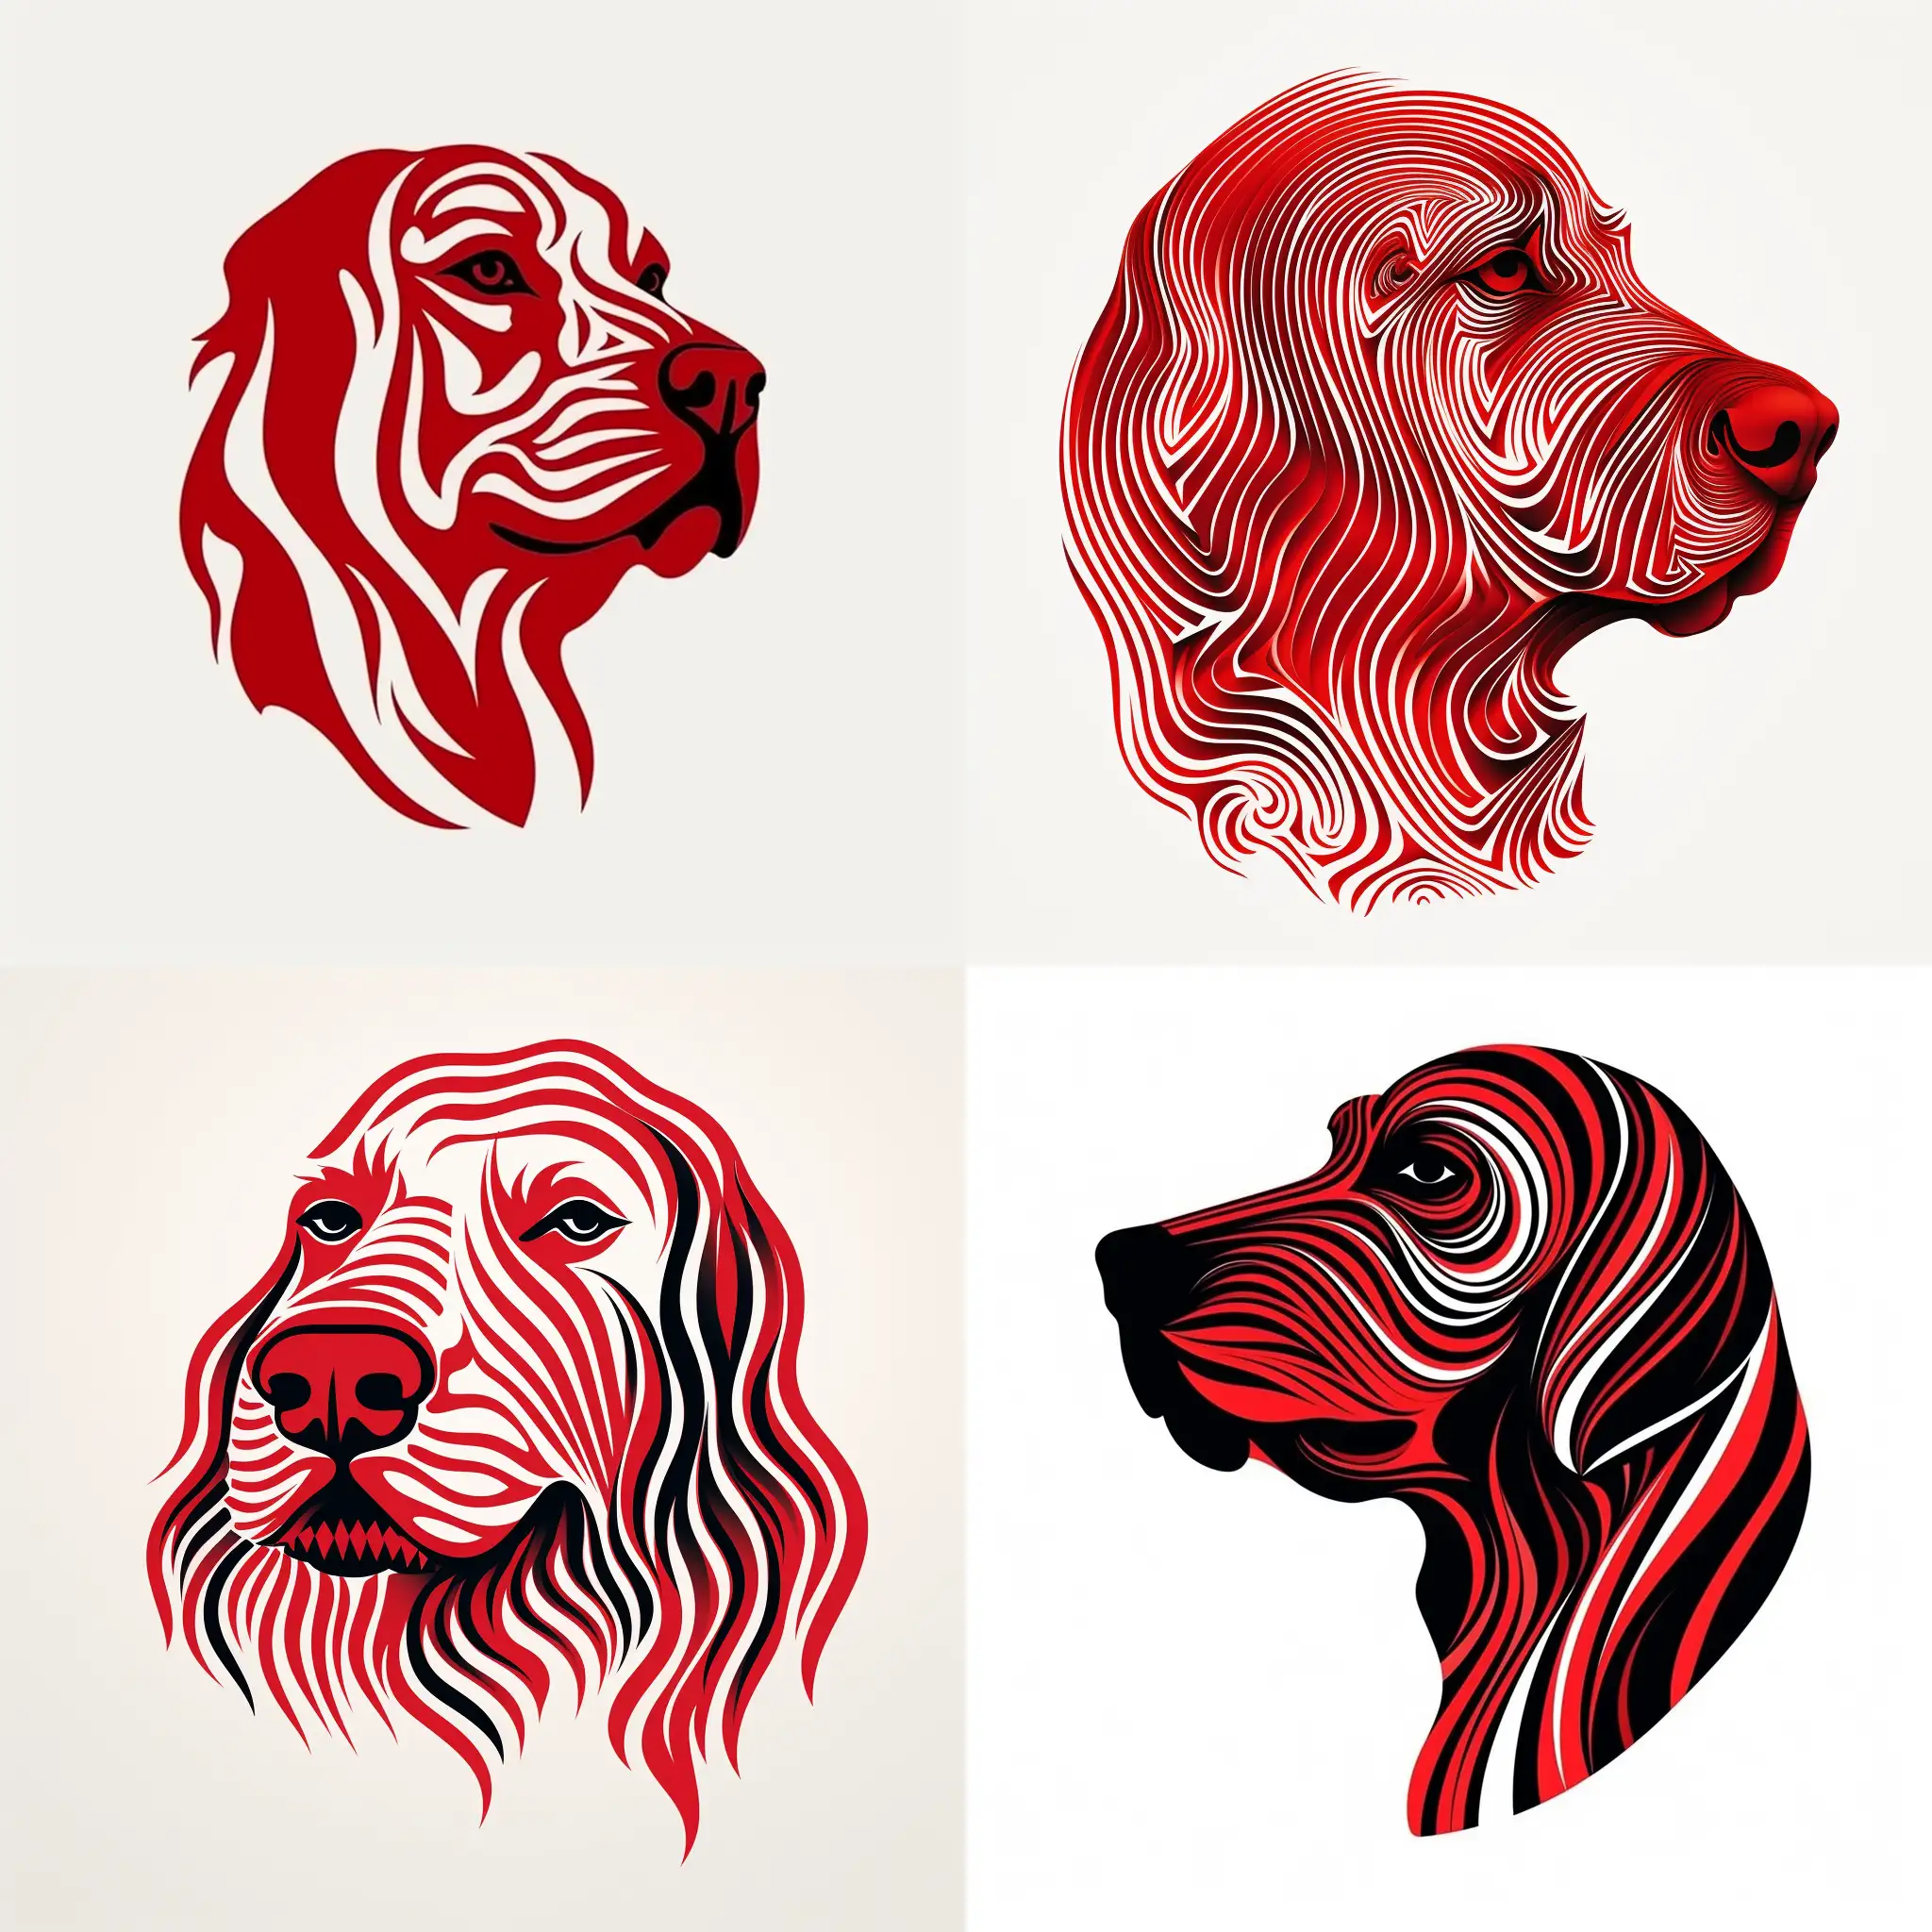 单色图案，雕版印刷效果，简约，抽象，狗头，logo，品牌，设计稿，红色，背景纯白色